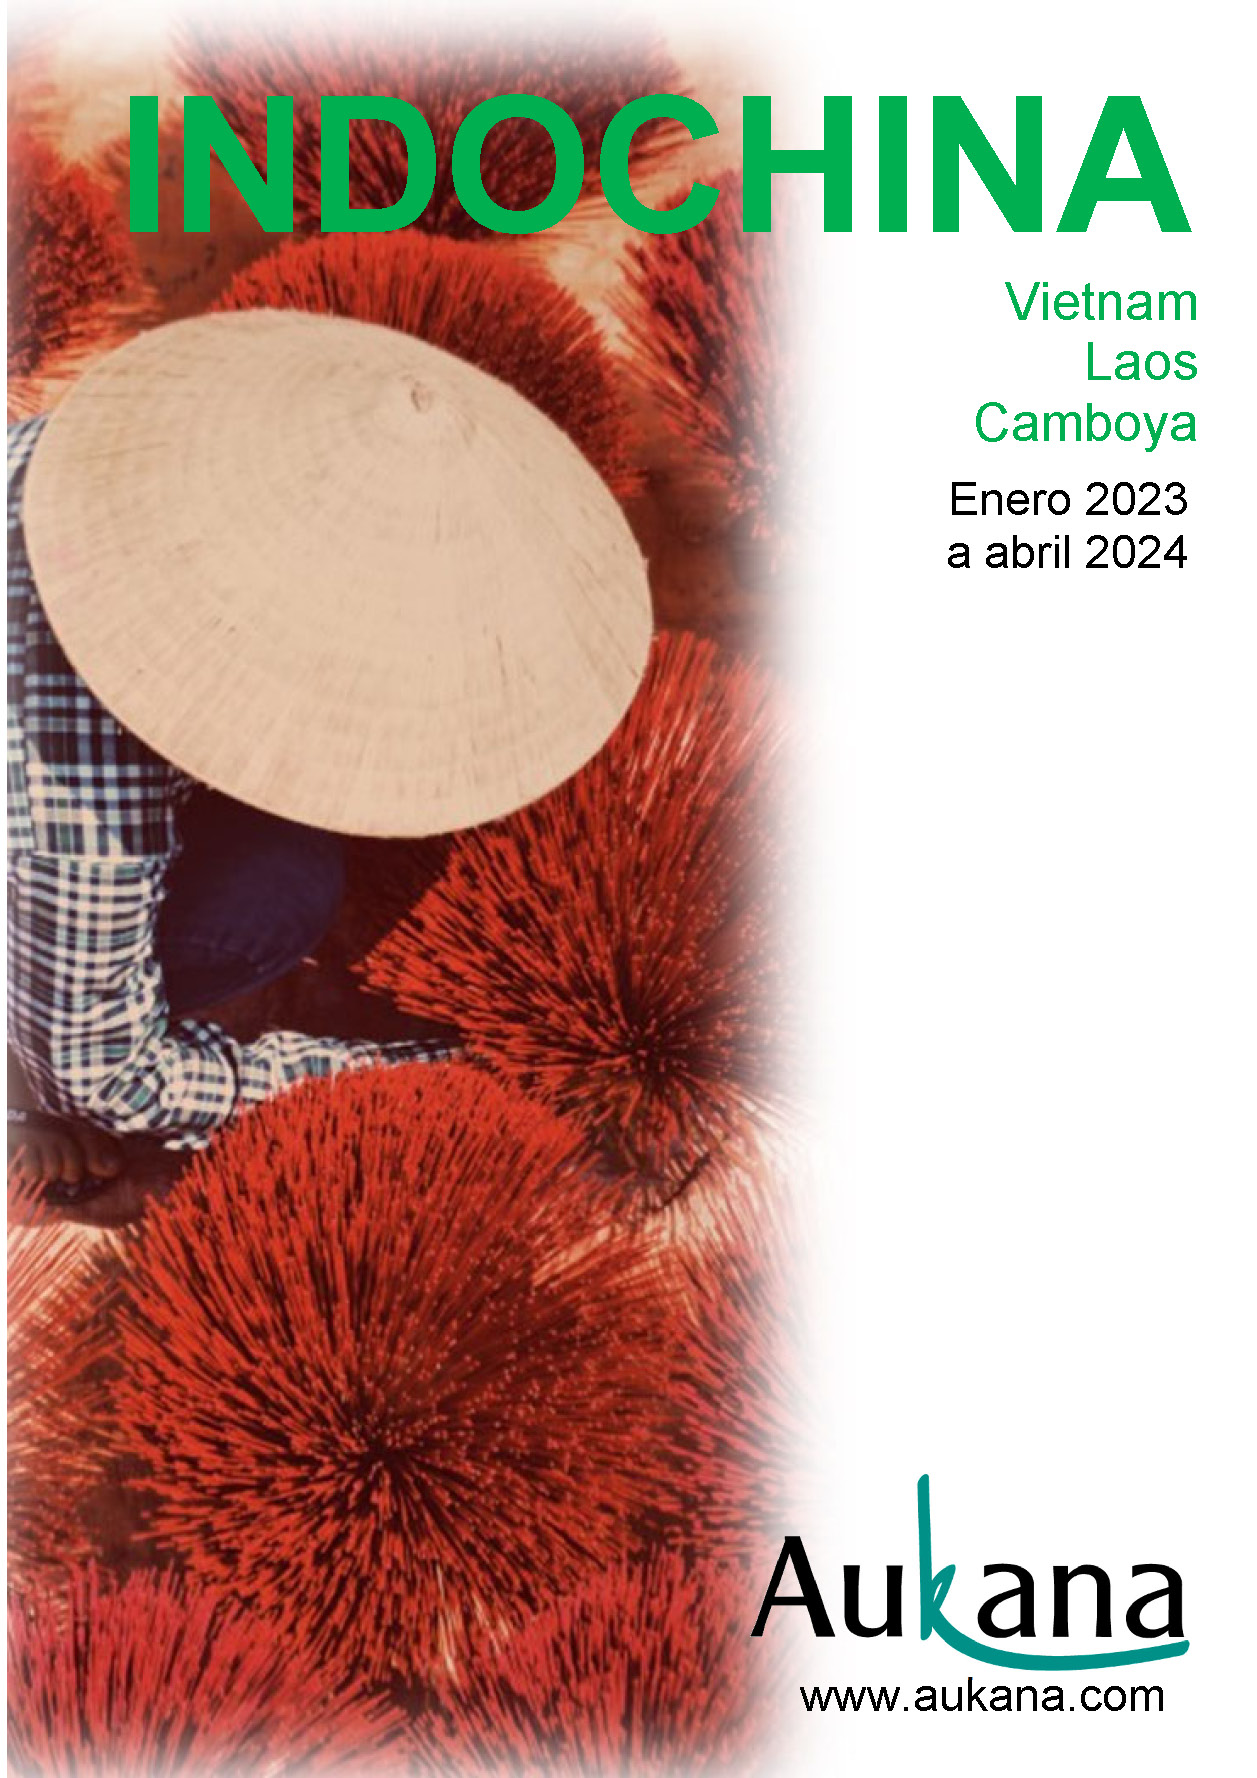 Catalogo Aukana Travel Indochina Vietnam Camboya y Laos 2023-2024